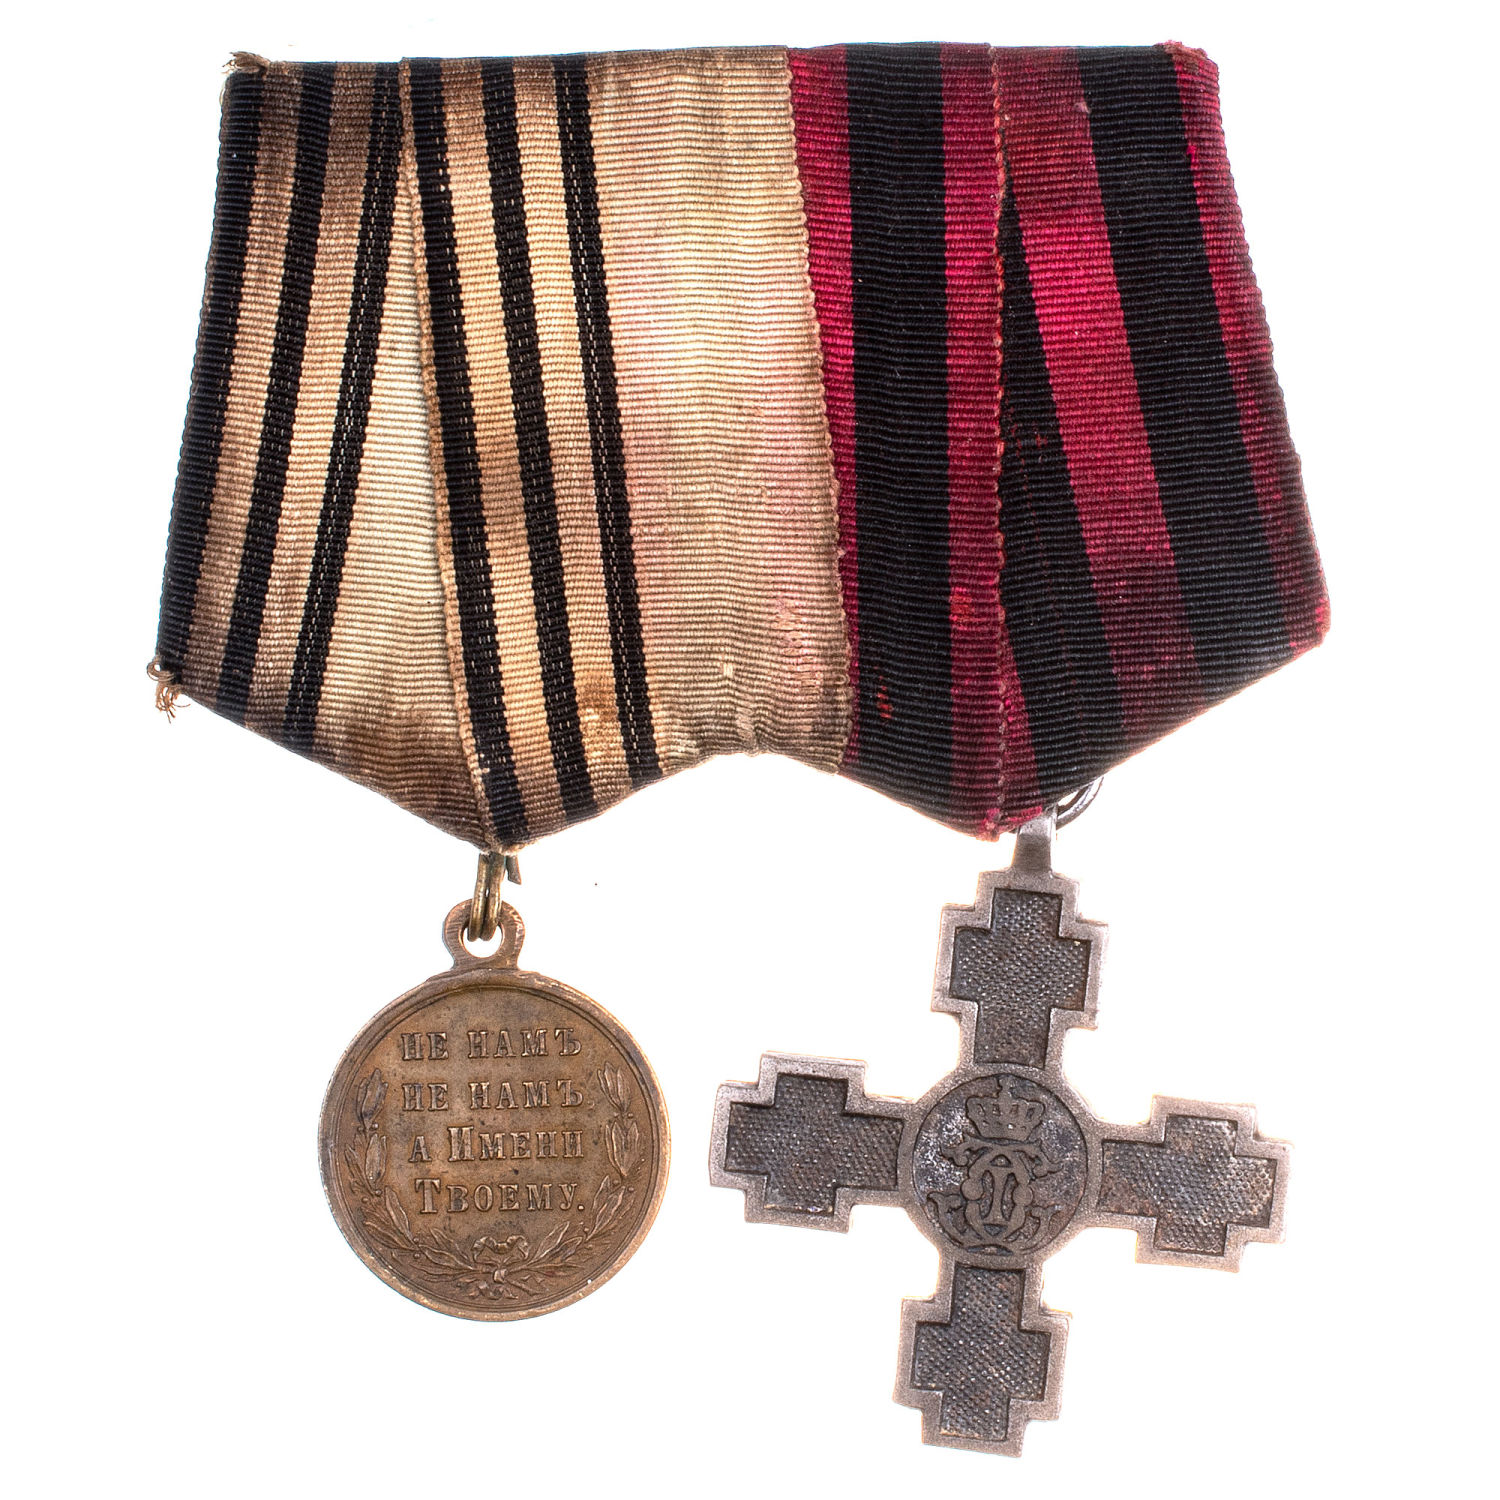 Наградная колодка на две награды - медаль "В память Русско - Турецкой войны 1877 - 1878 гг" и Крест "В память перехода через Дунай".